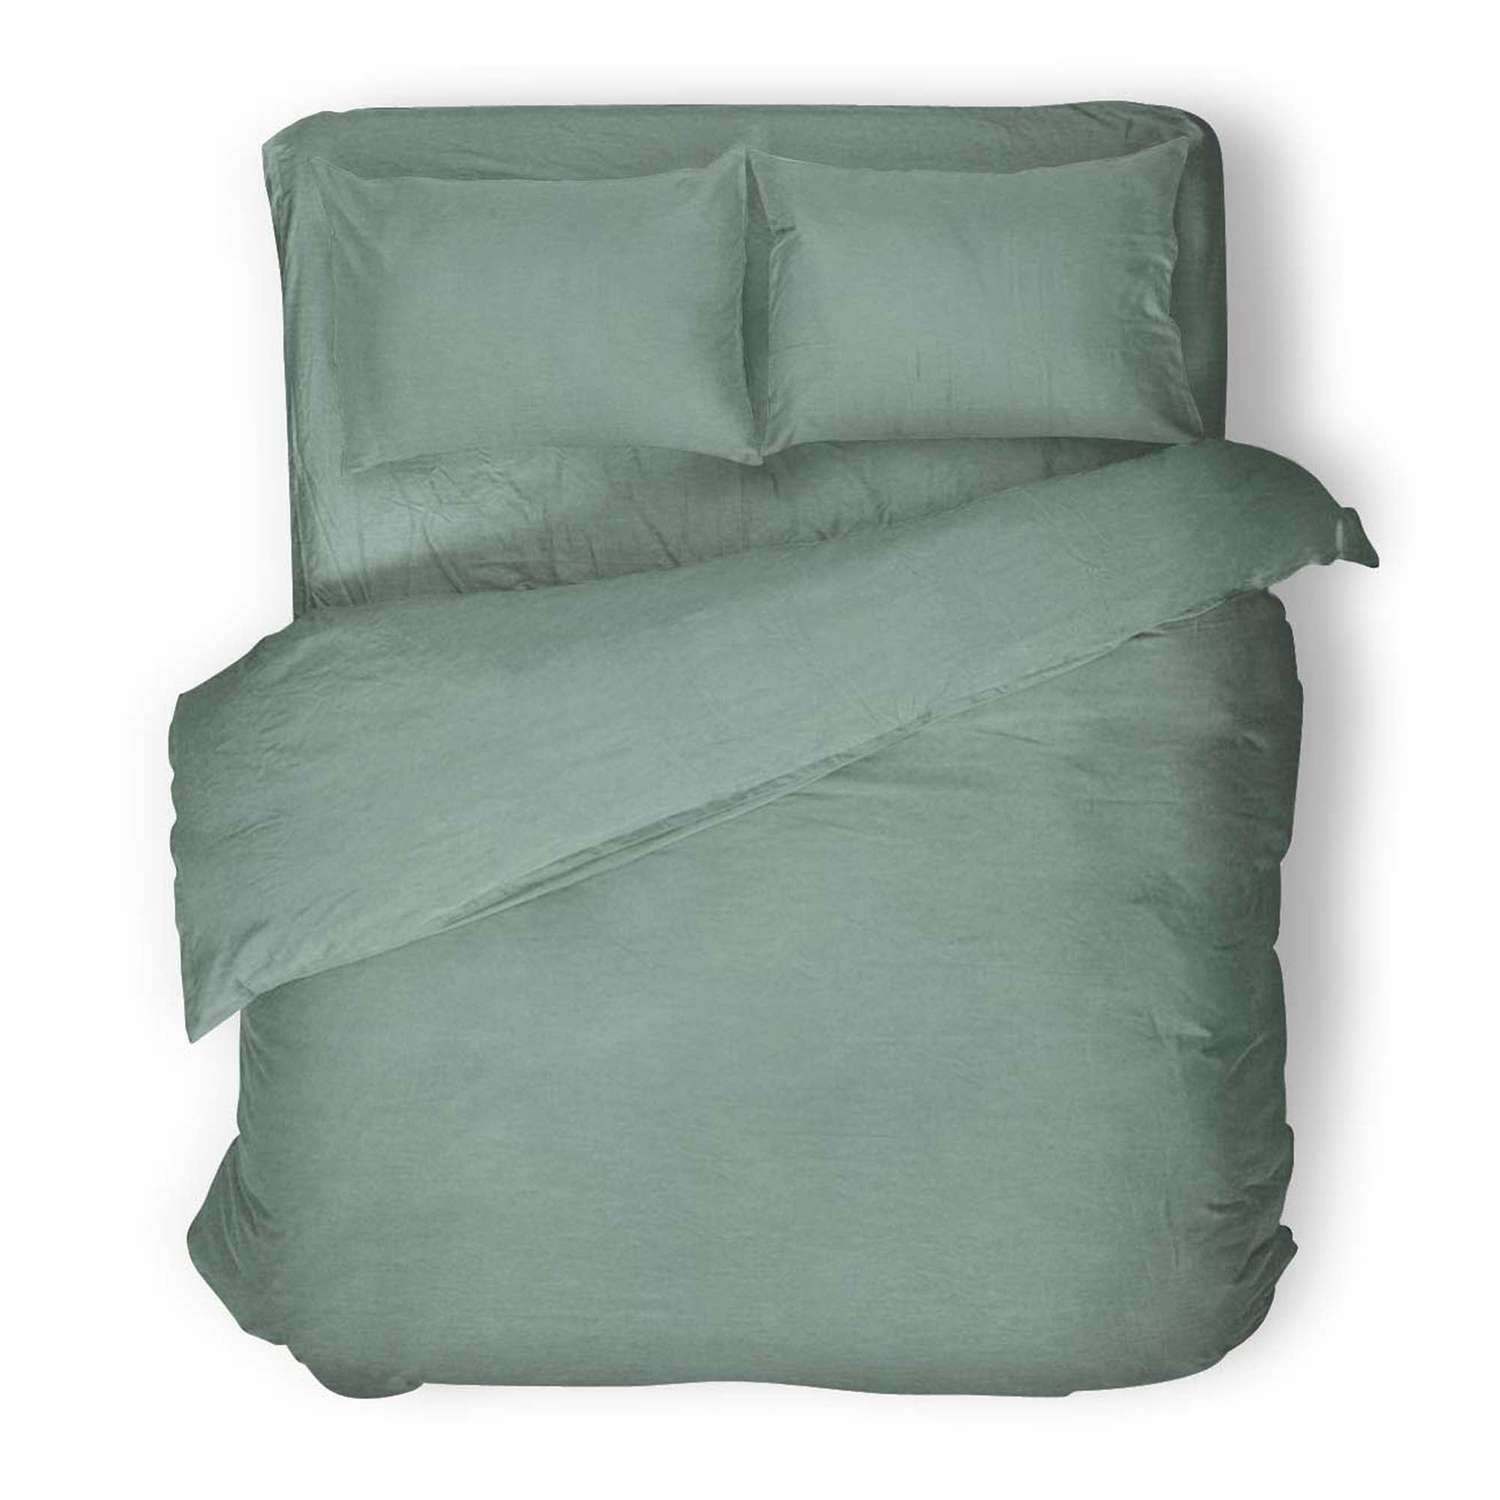 Комплект постельного белья Absolut Семейный Emerald наволочки 70х70 и 50х70 меланж - фото 1